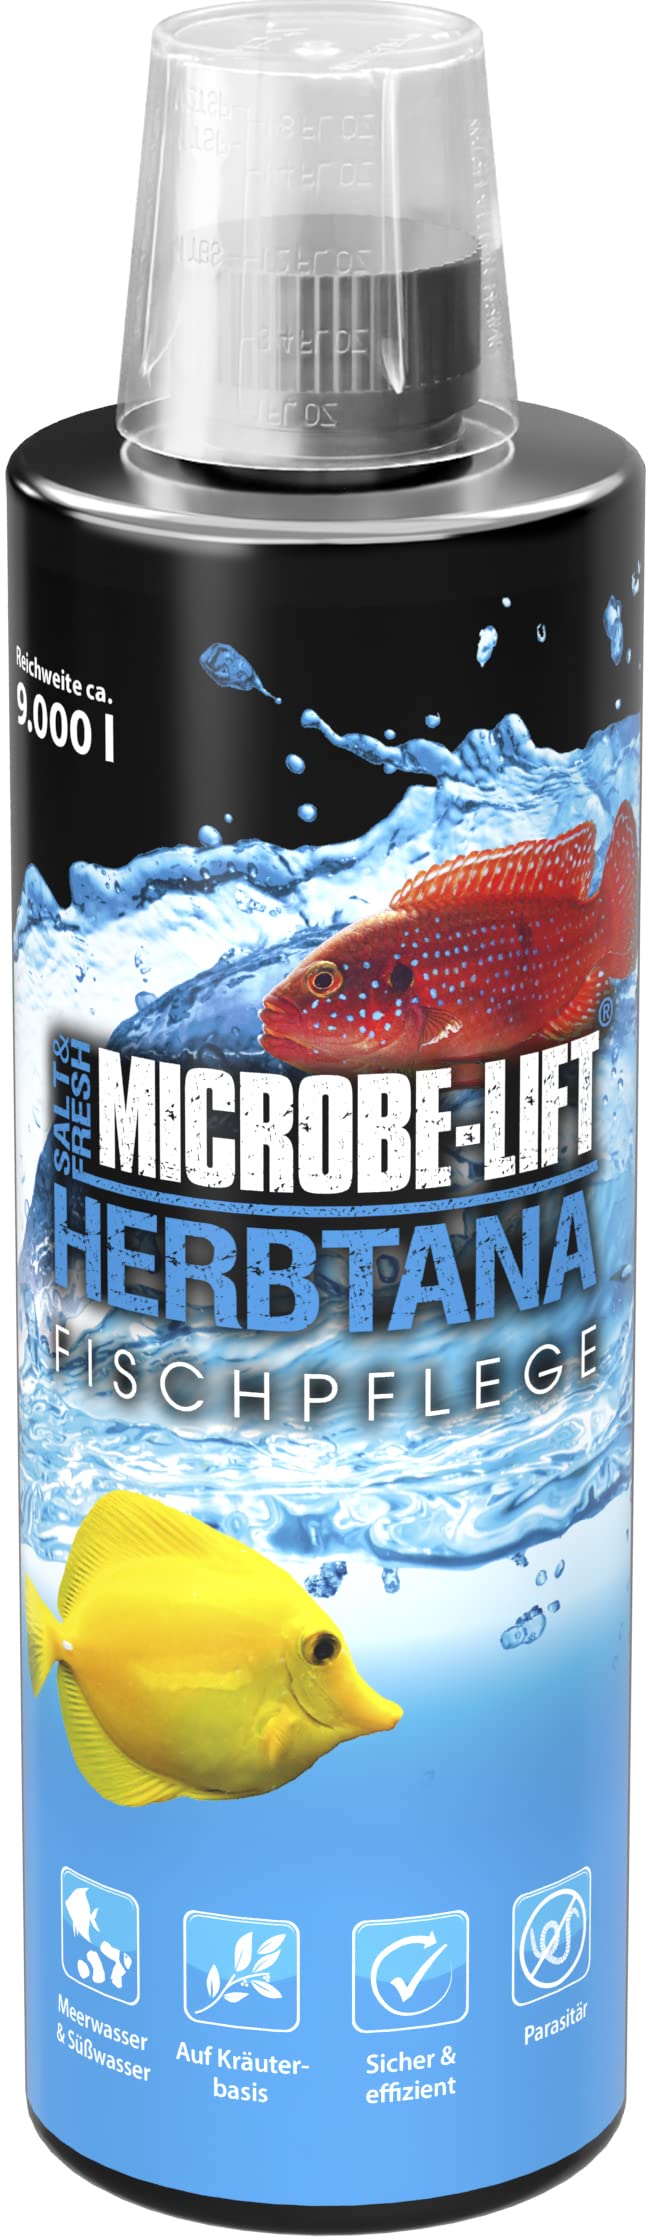 MICROBE-LIFT Herbtana - 473 ml - Natürlicher, kräuterbasierter Gesundheitsbooster für Fische, stärkt das Immunsystem in Meer- und Süßwasseraquarien.